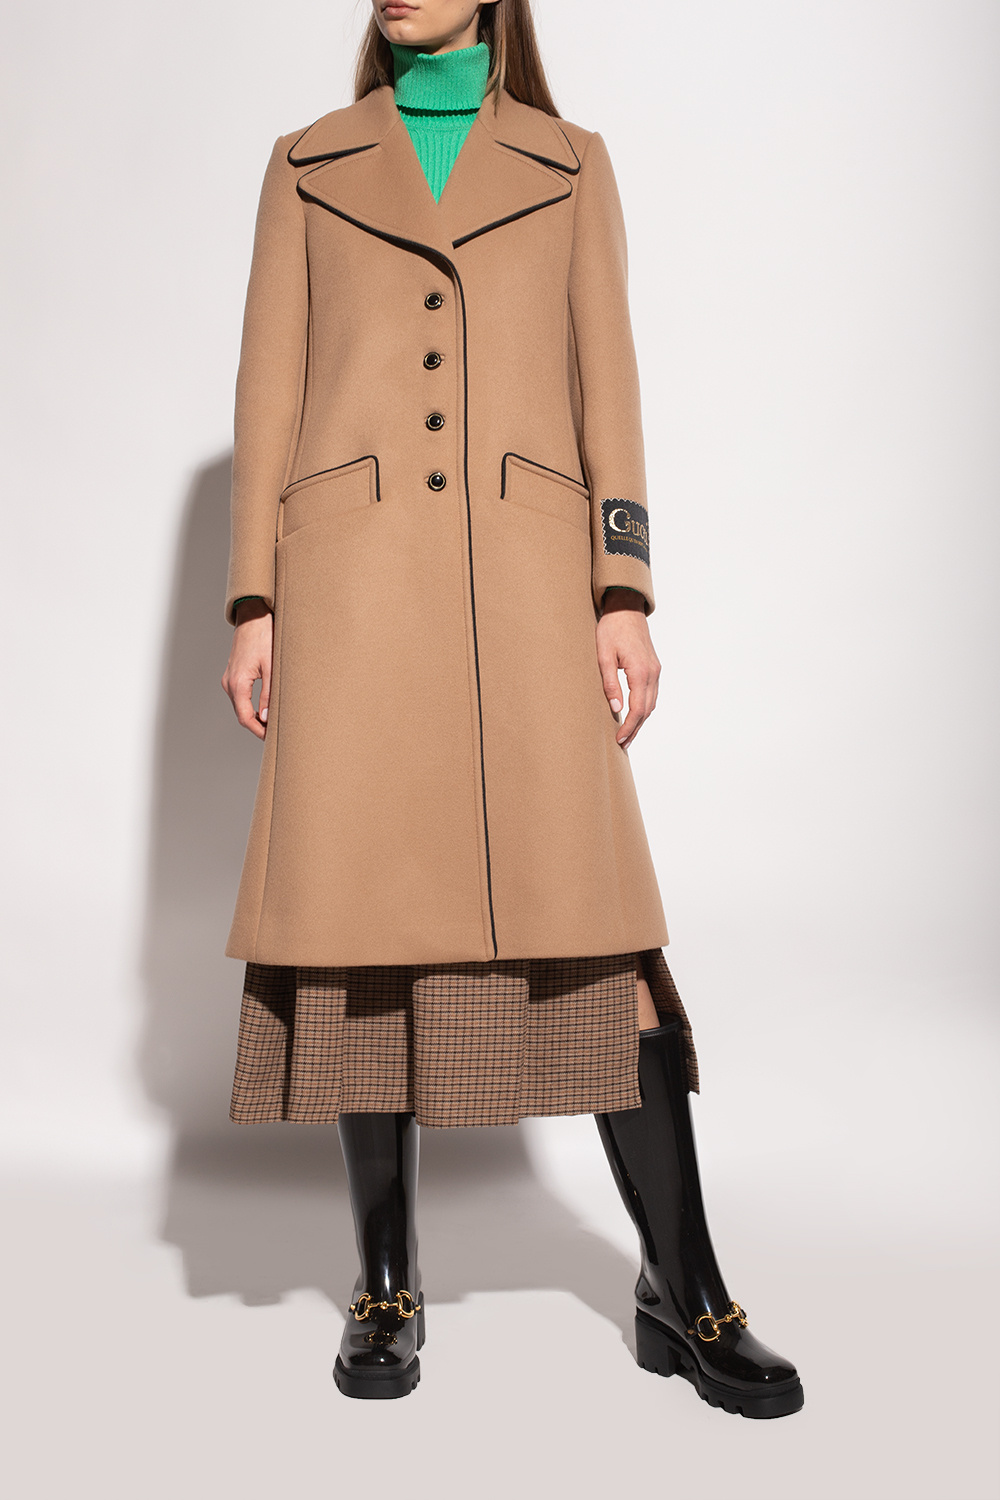 Gucci woman gucci coats wool blend coat